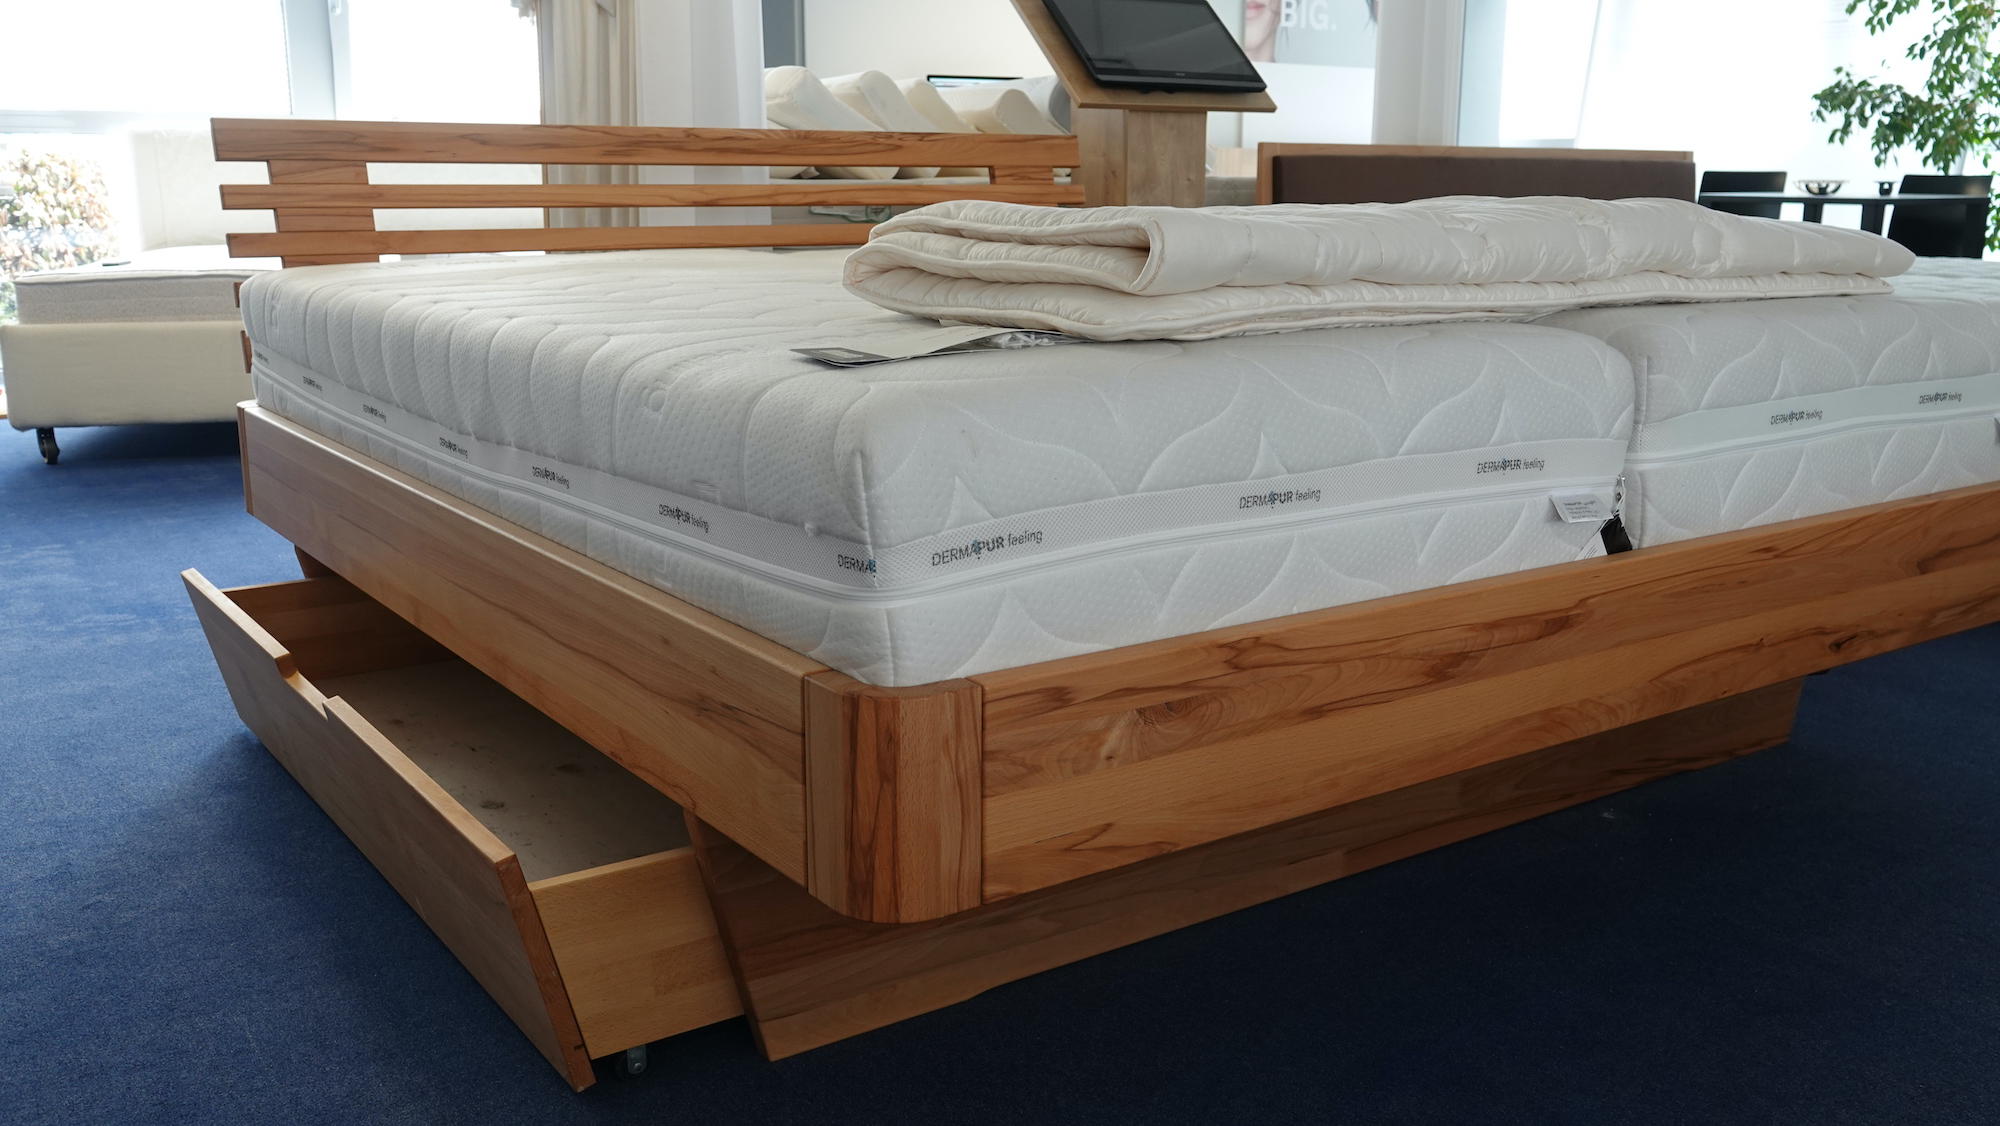 Kundenbild groß 9 Göpfert - gesund schlafen I Matratzen & Betten